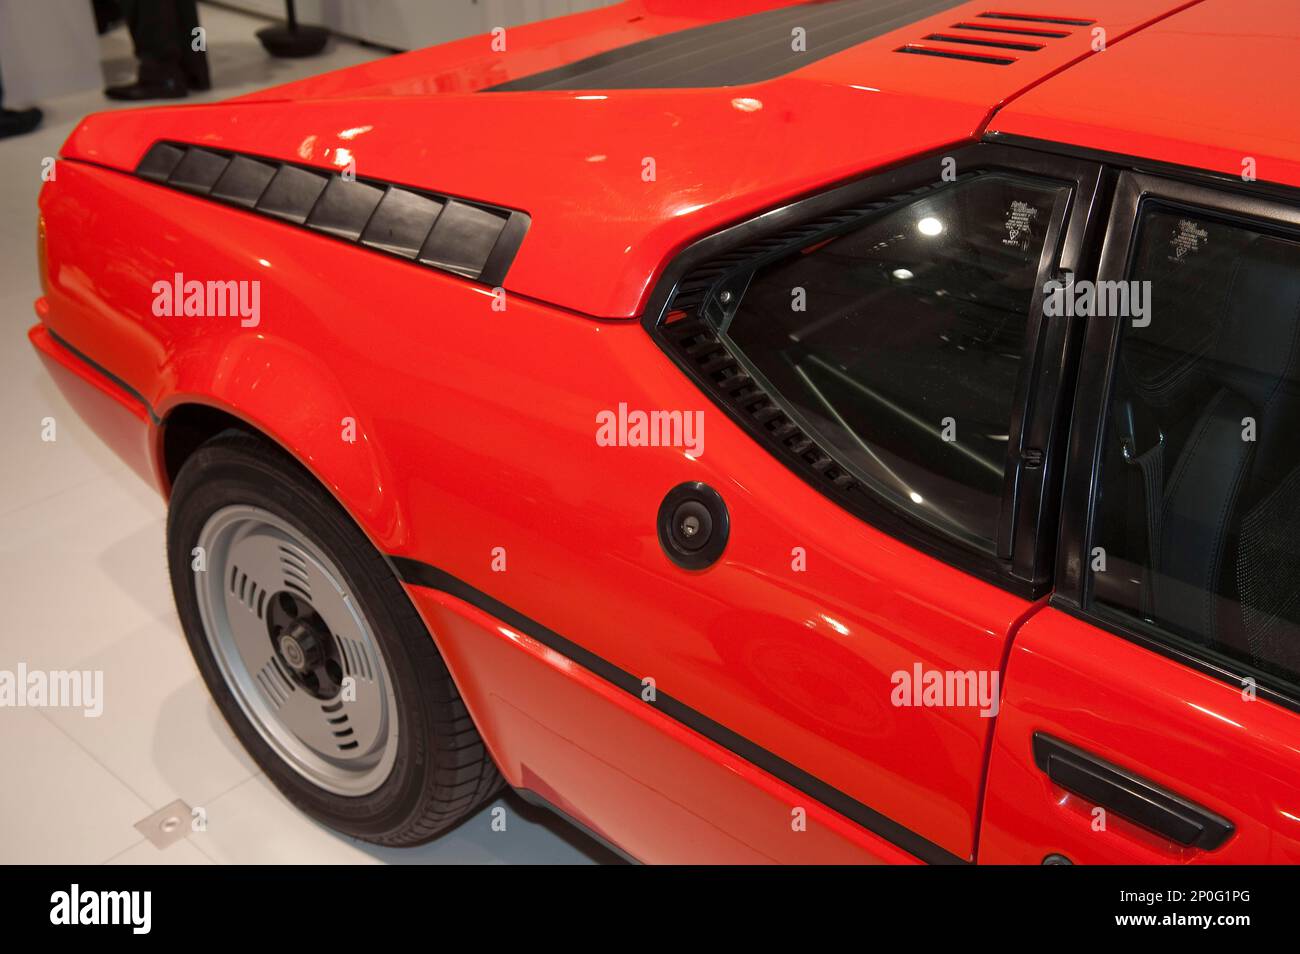 BMW M1, 1978-1981 gebaut, Supersportwagen, Sportwagen, Designer: Giorgetto Giugiaro Stockfoto